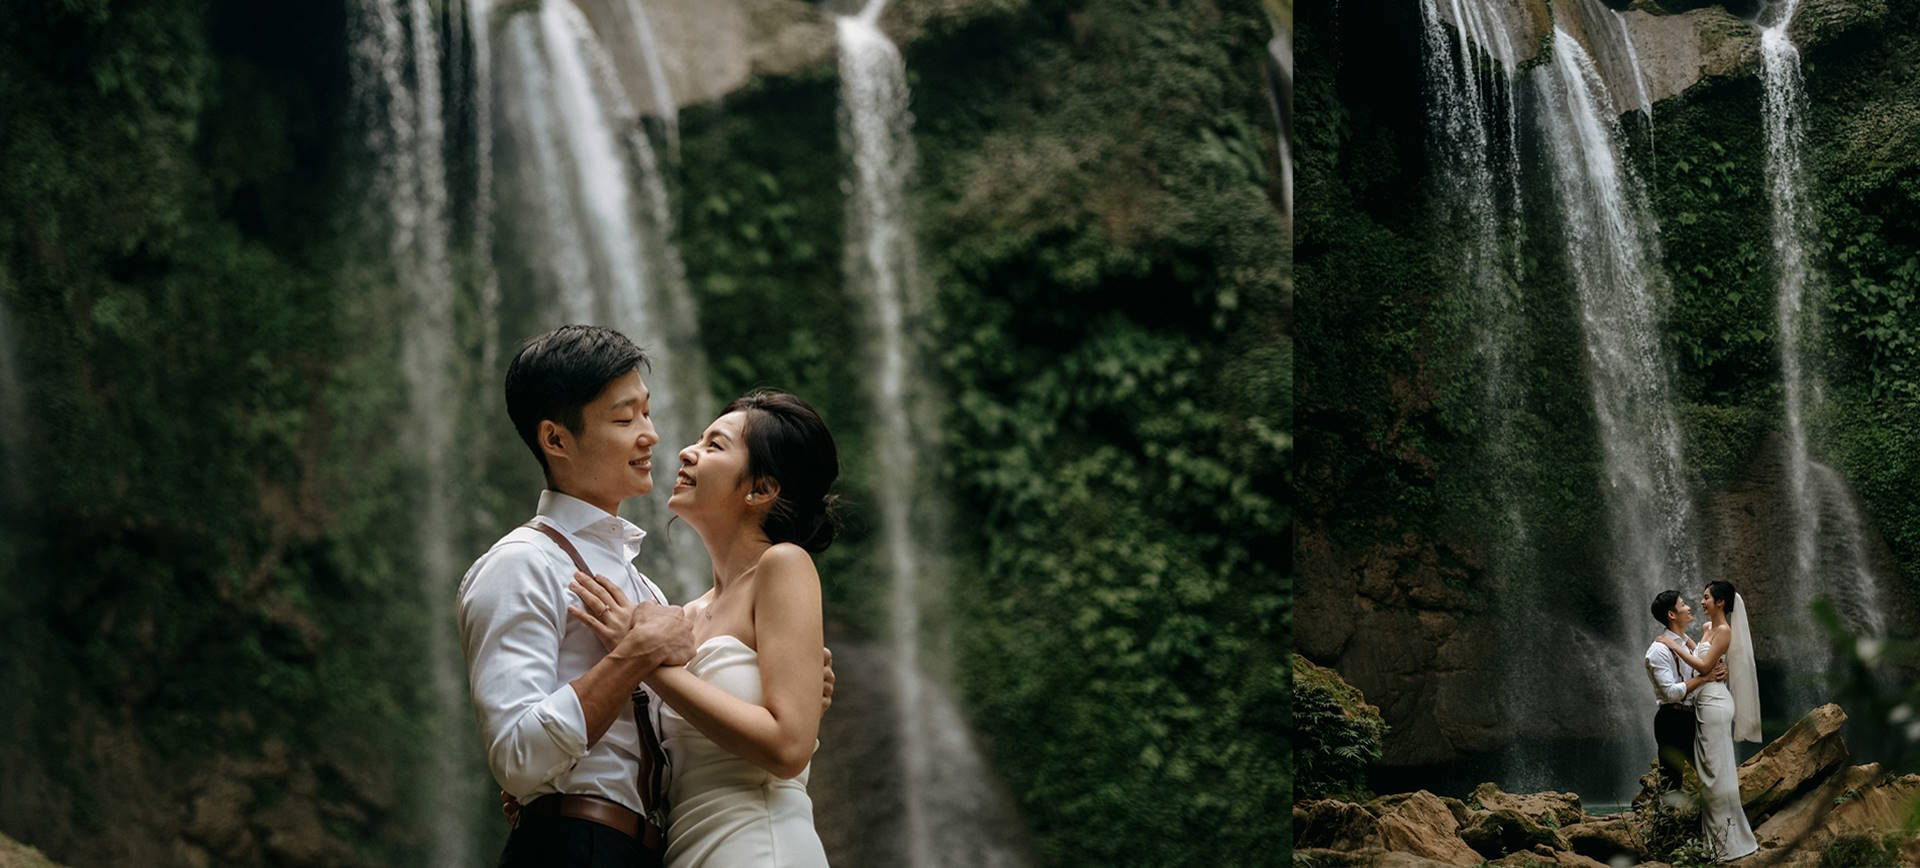 Vietnam Waterfall Elopement Wedding Ceremony